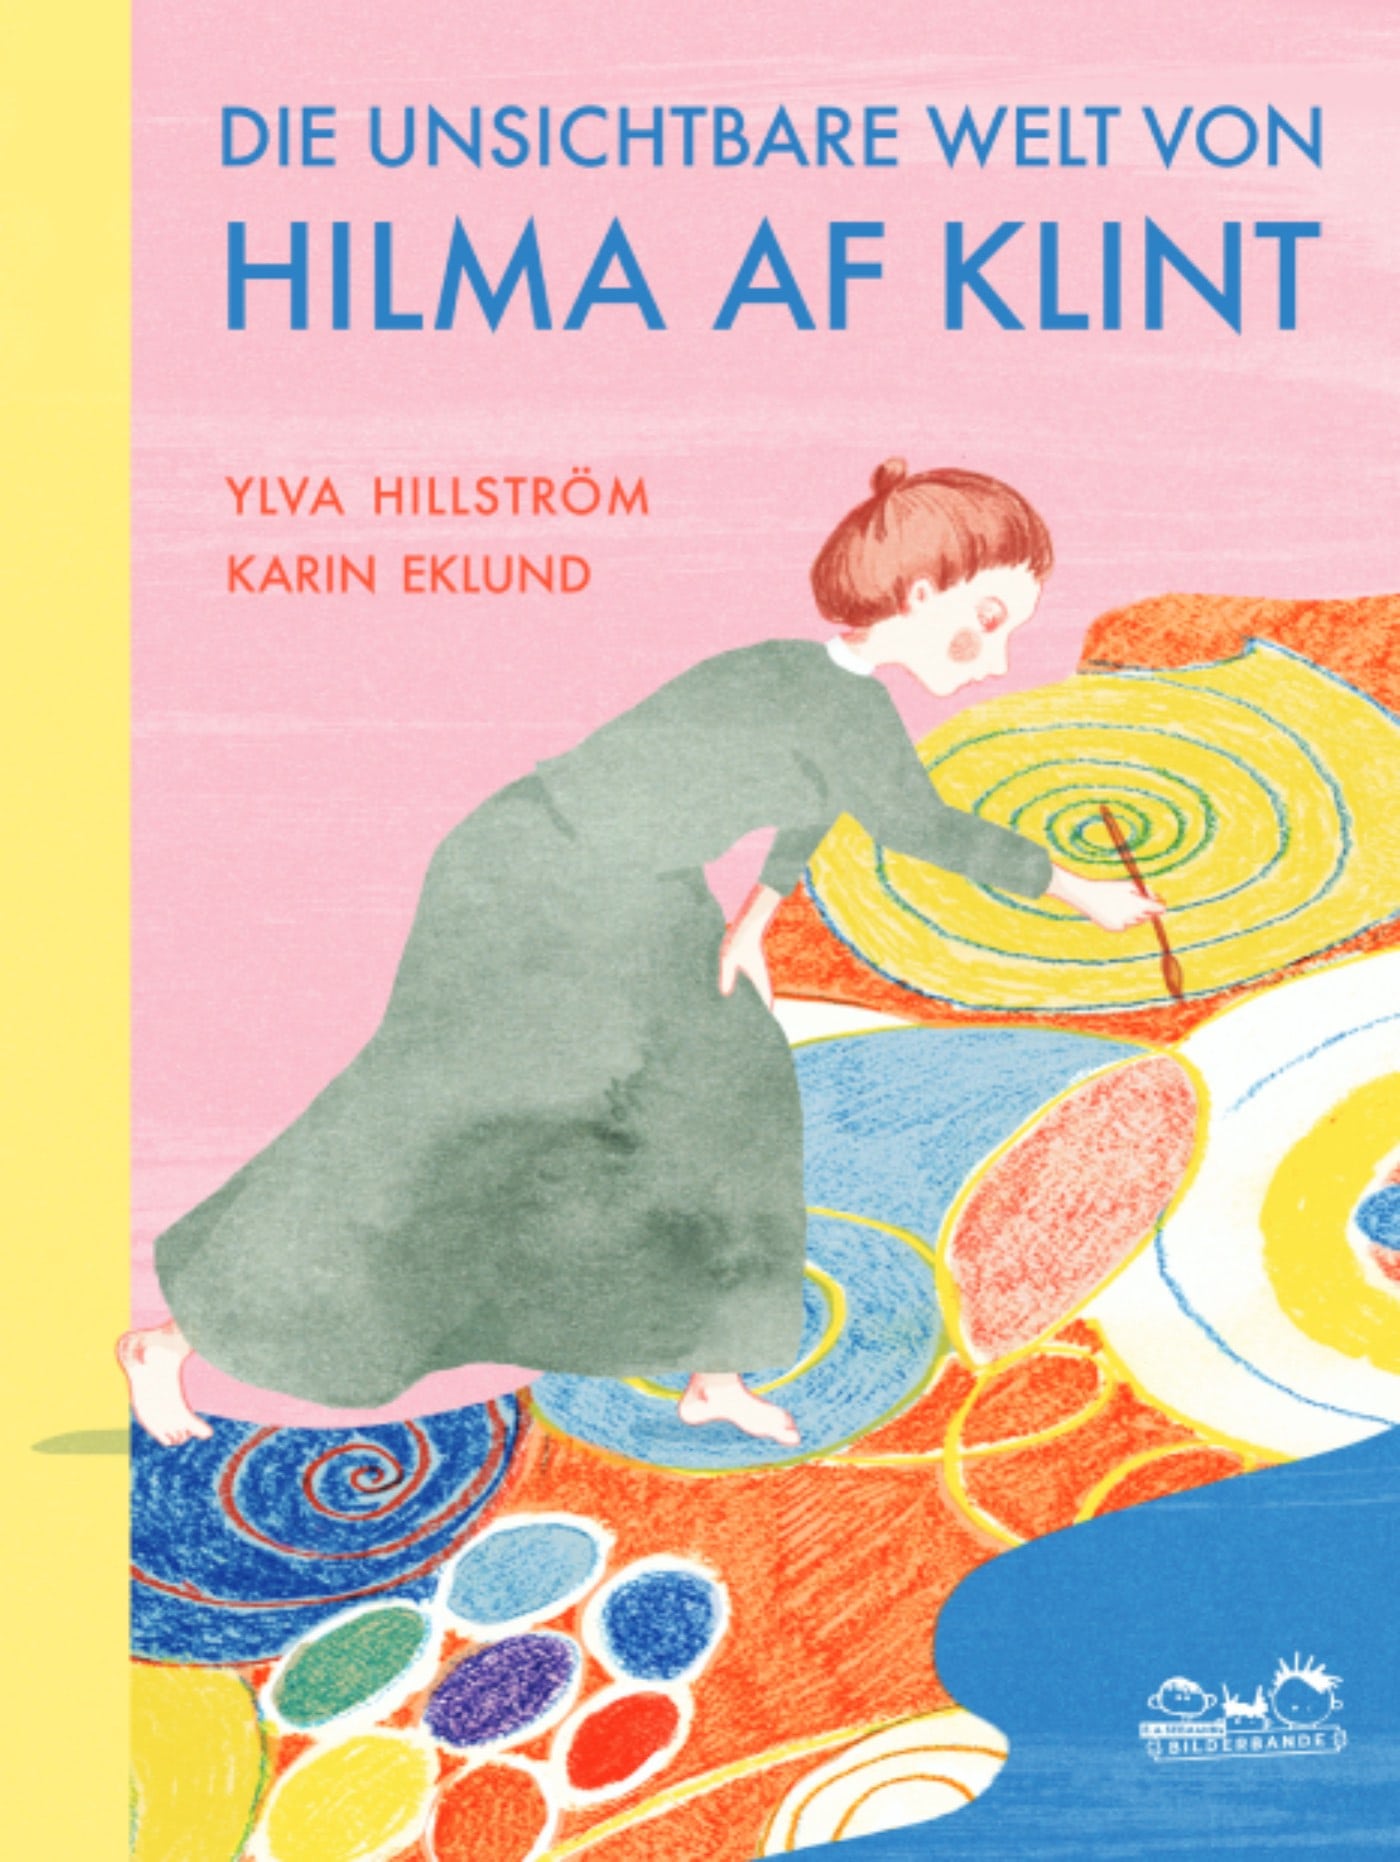 Kinderkunstbuch über Hilma af Klint // HIMBEER